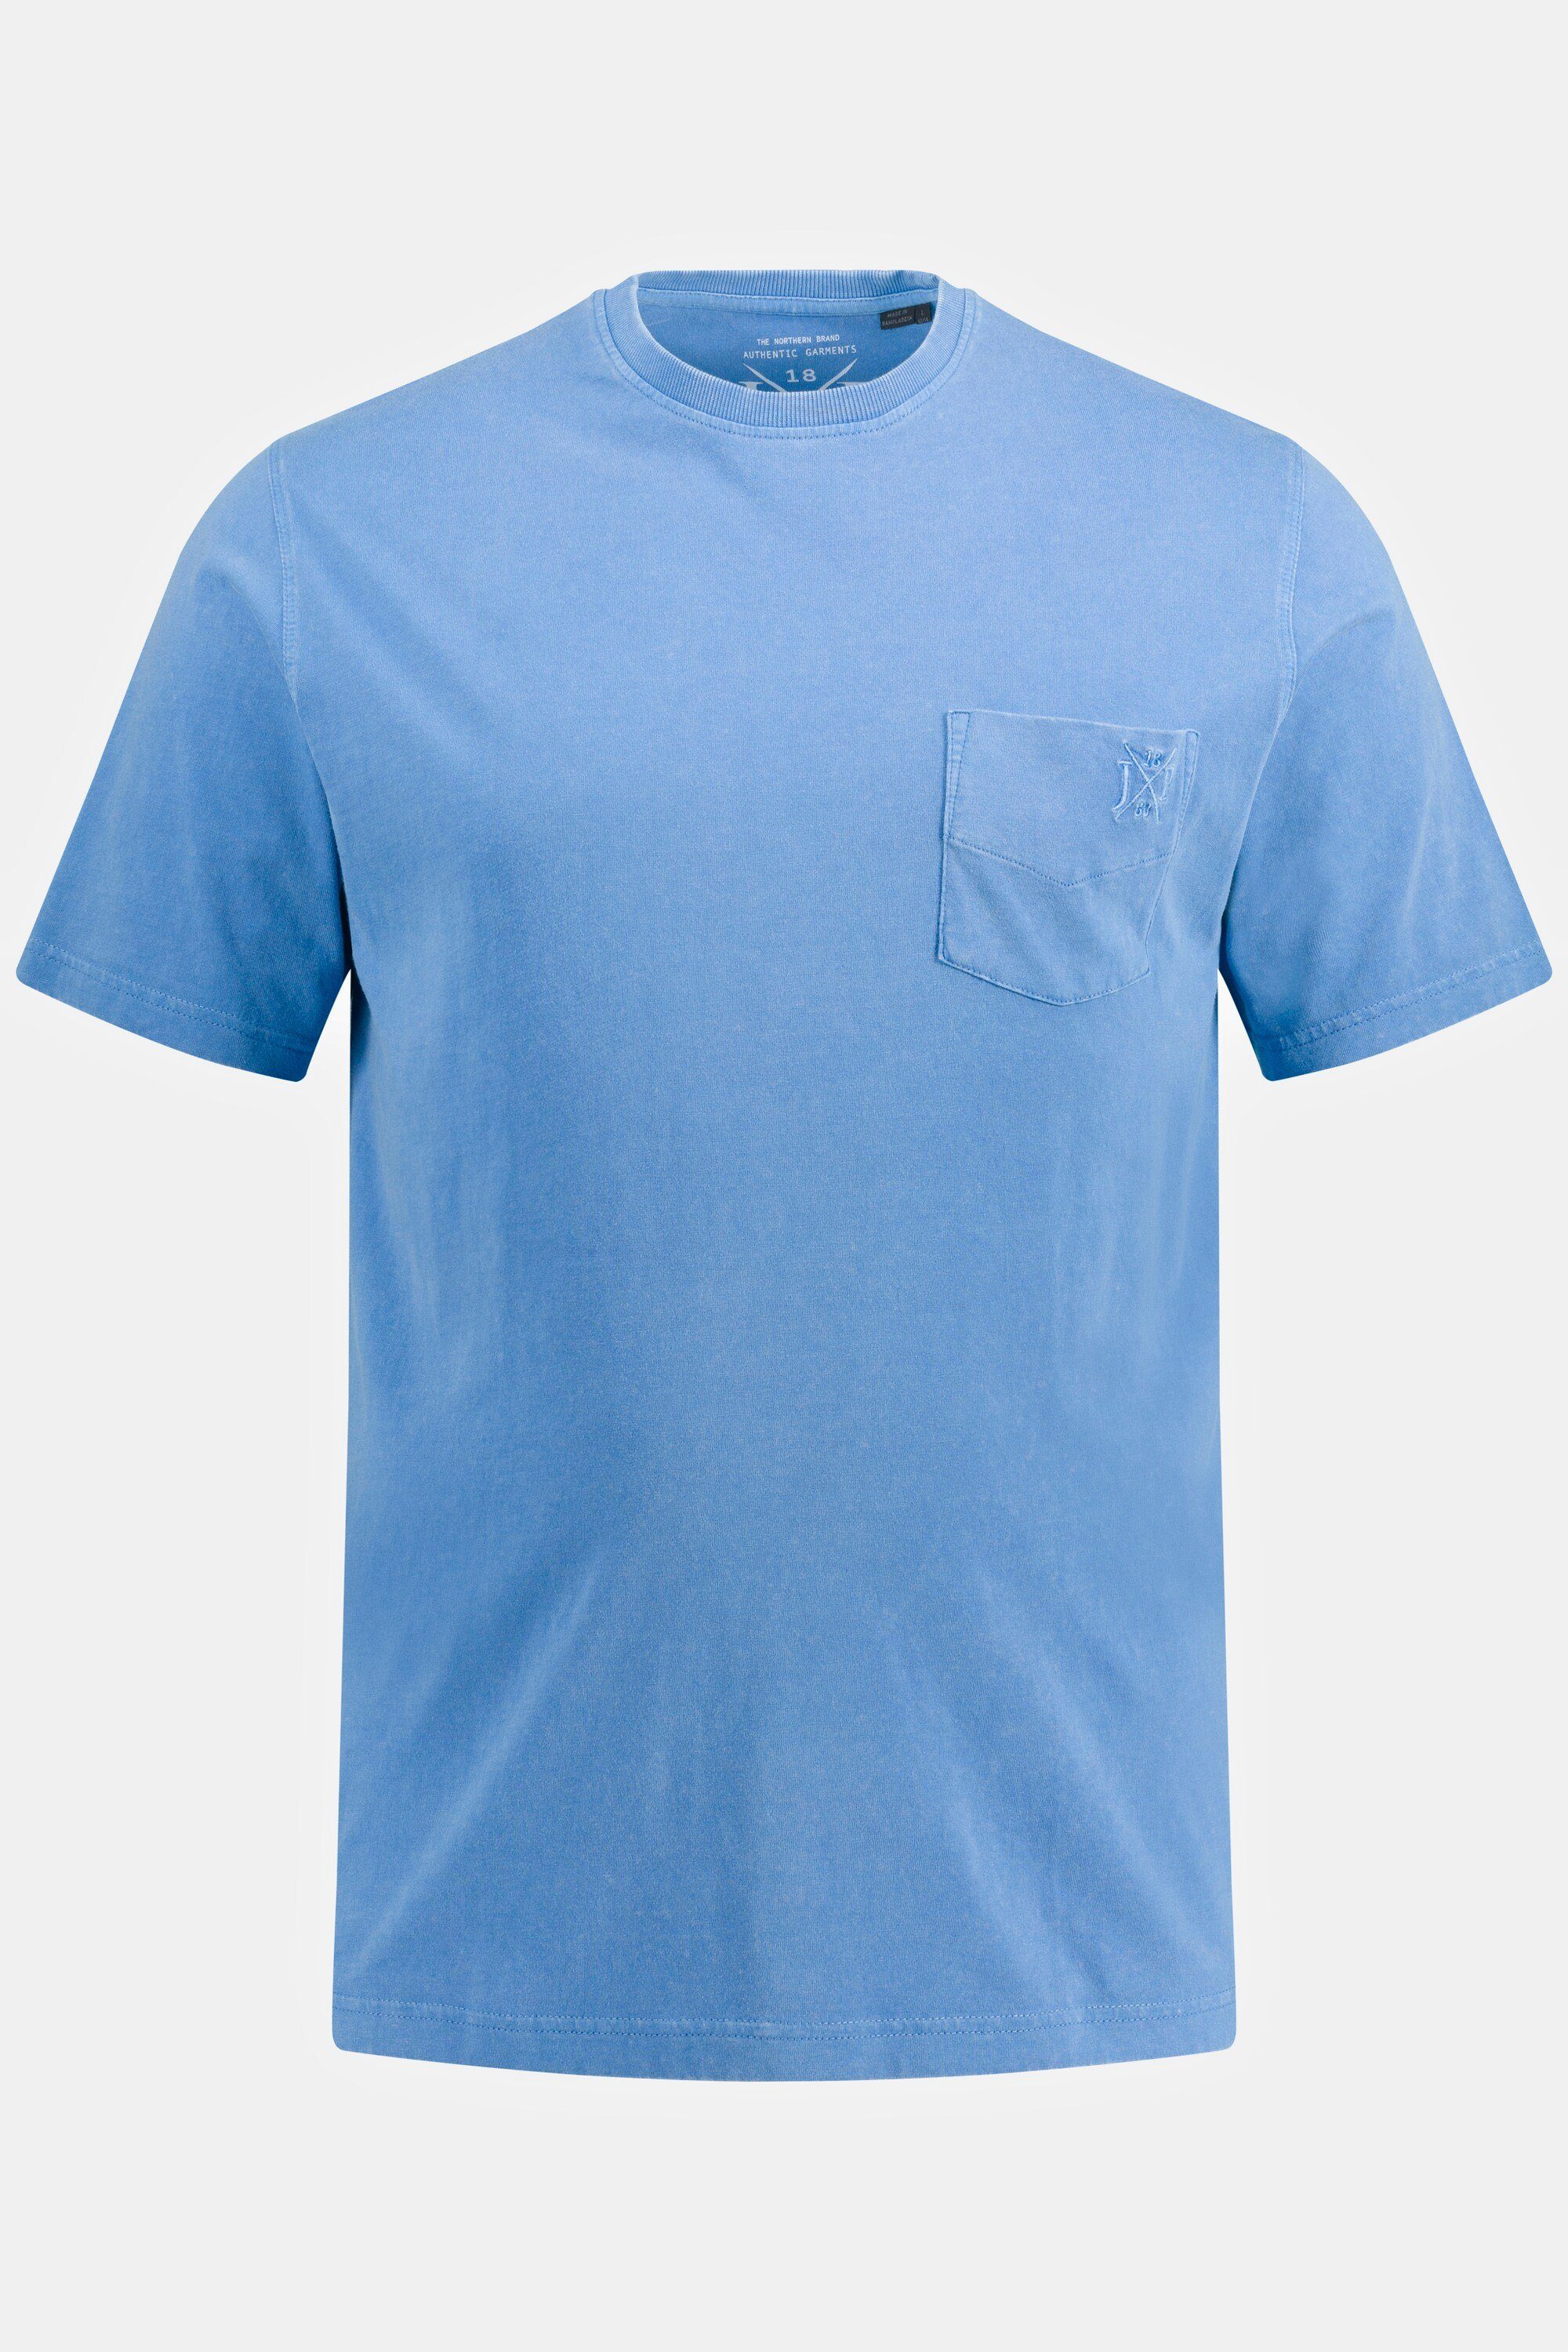 blau Halbarm T-Shirt Rundhals T-Shirt JP1880 Brusttasche